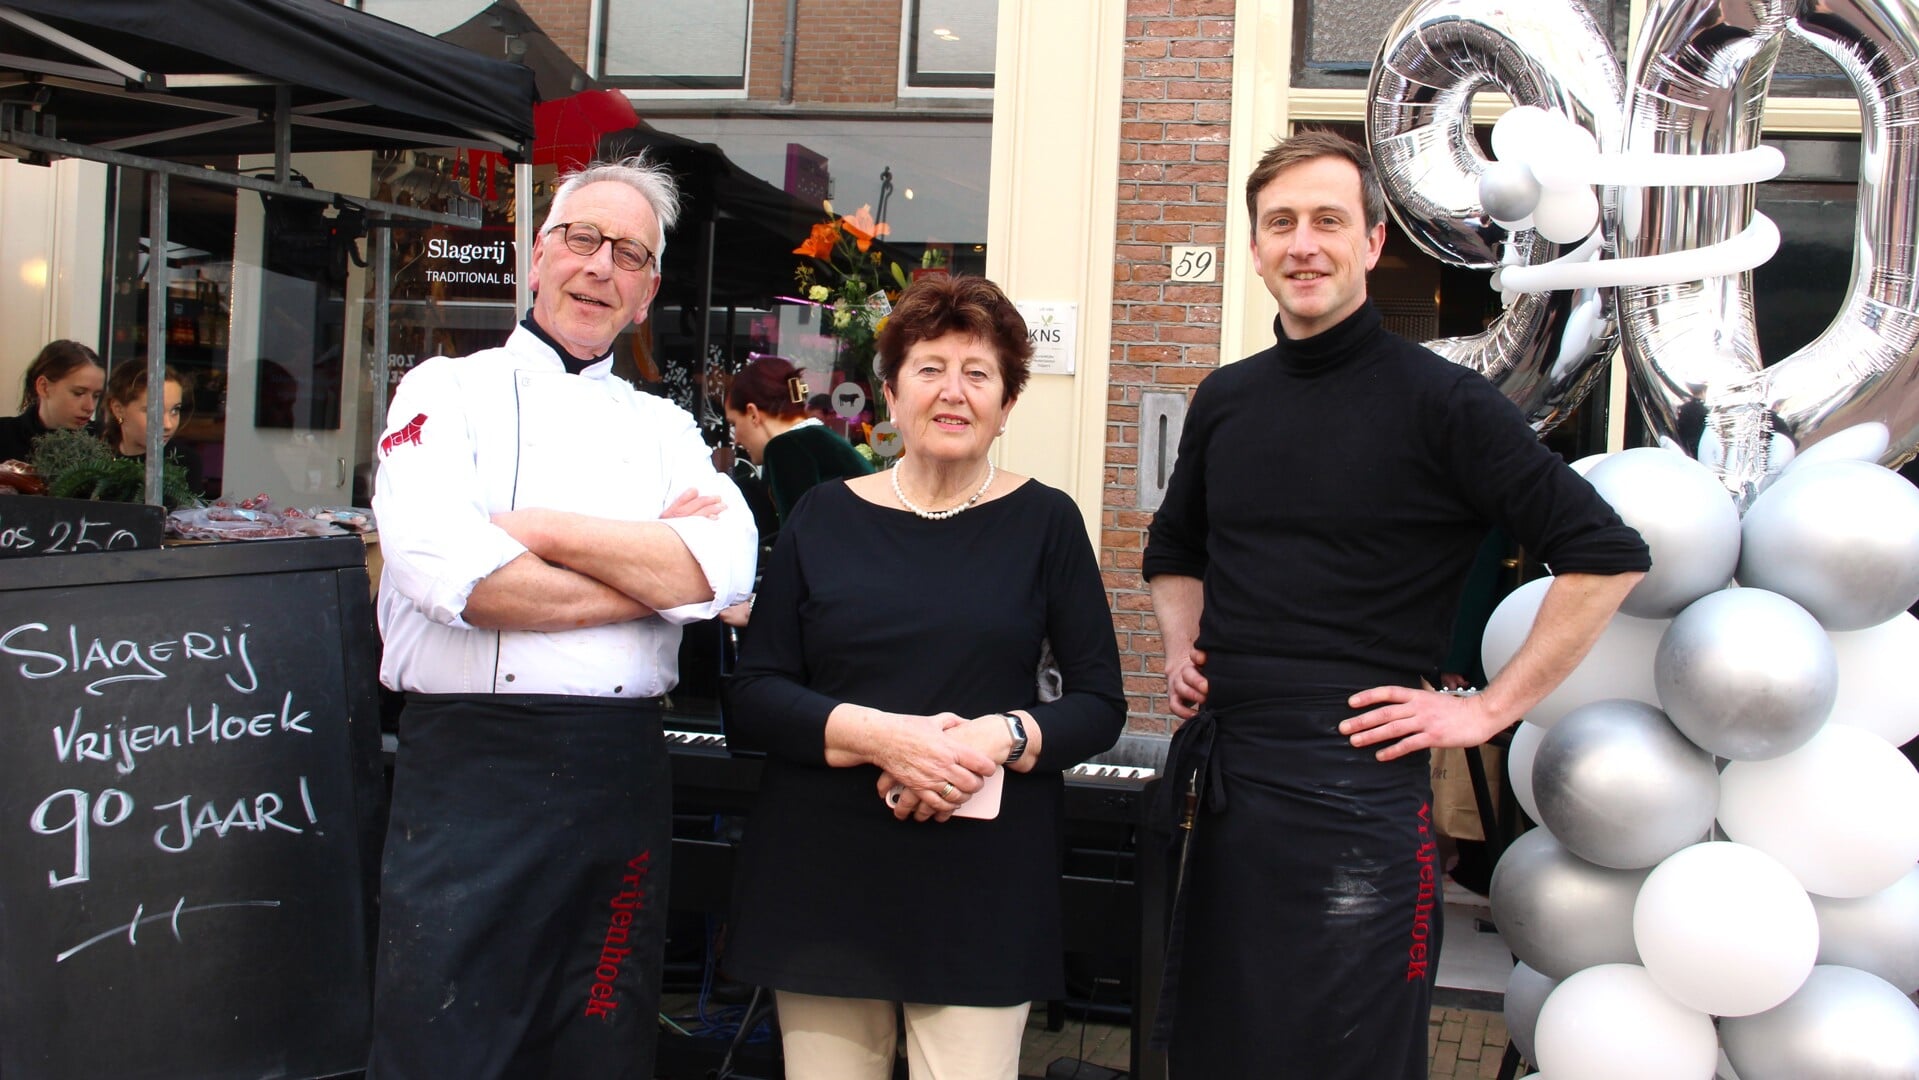 Vader Dick, moeder Gerda en zoon Job vieren het 90-jarig jubileum van het familiebedrijf Slagerij Vrijenhoek.